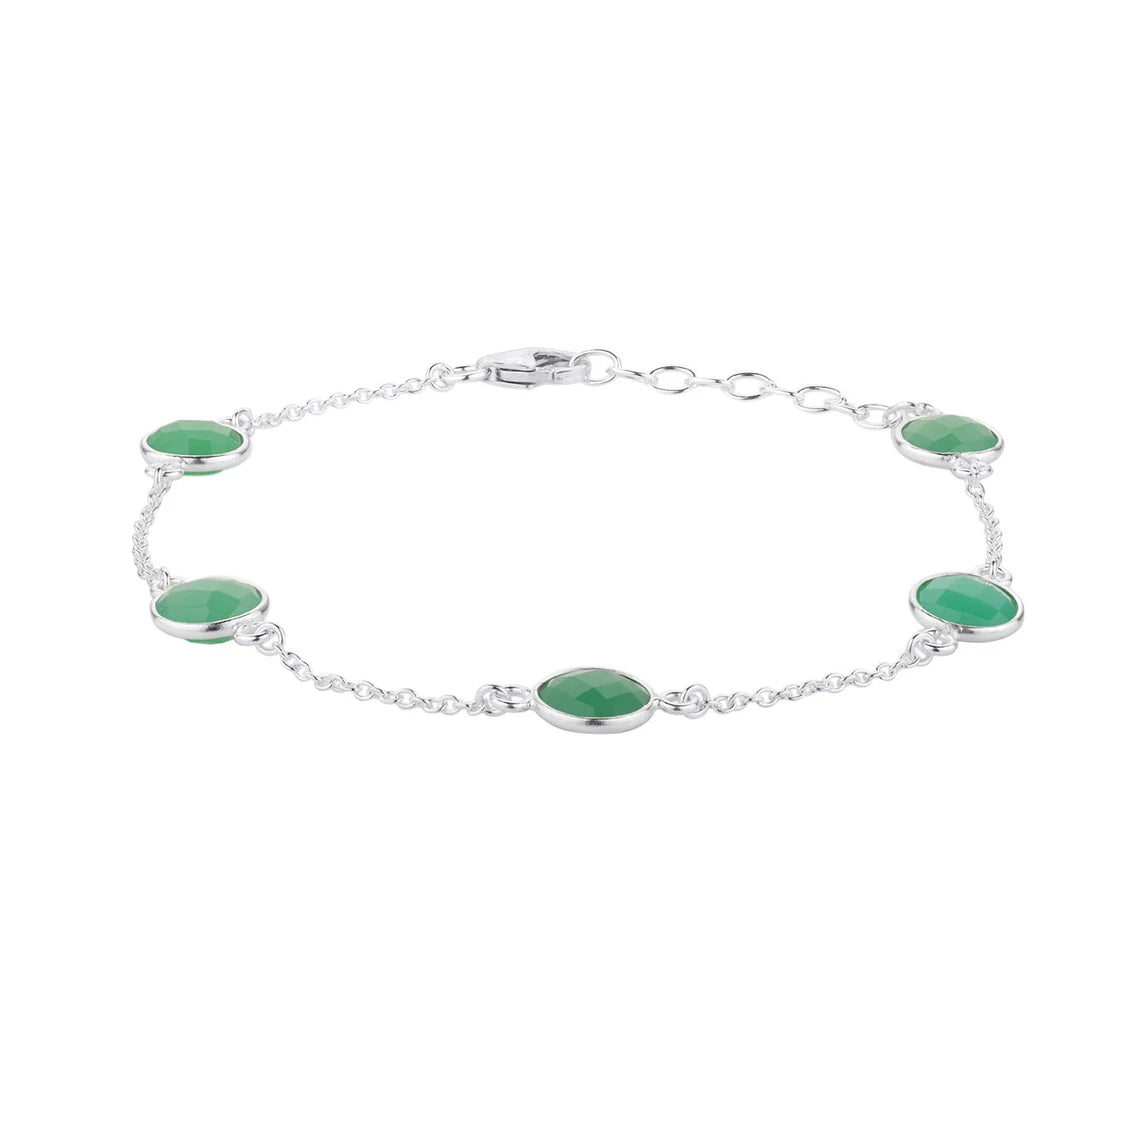 Chryso Onyx Bracelet, Silver Green Bracelet, Everyday Minimalist Bracelet, Gemstone Bracelet, Bezel Bracelet, Solid Silver Bracelet